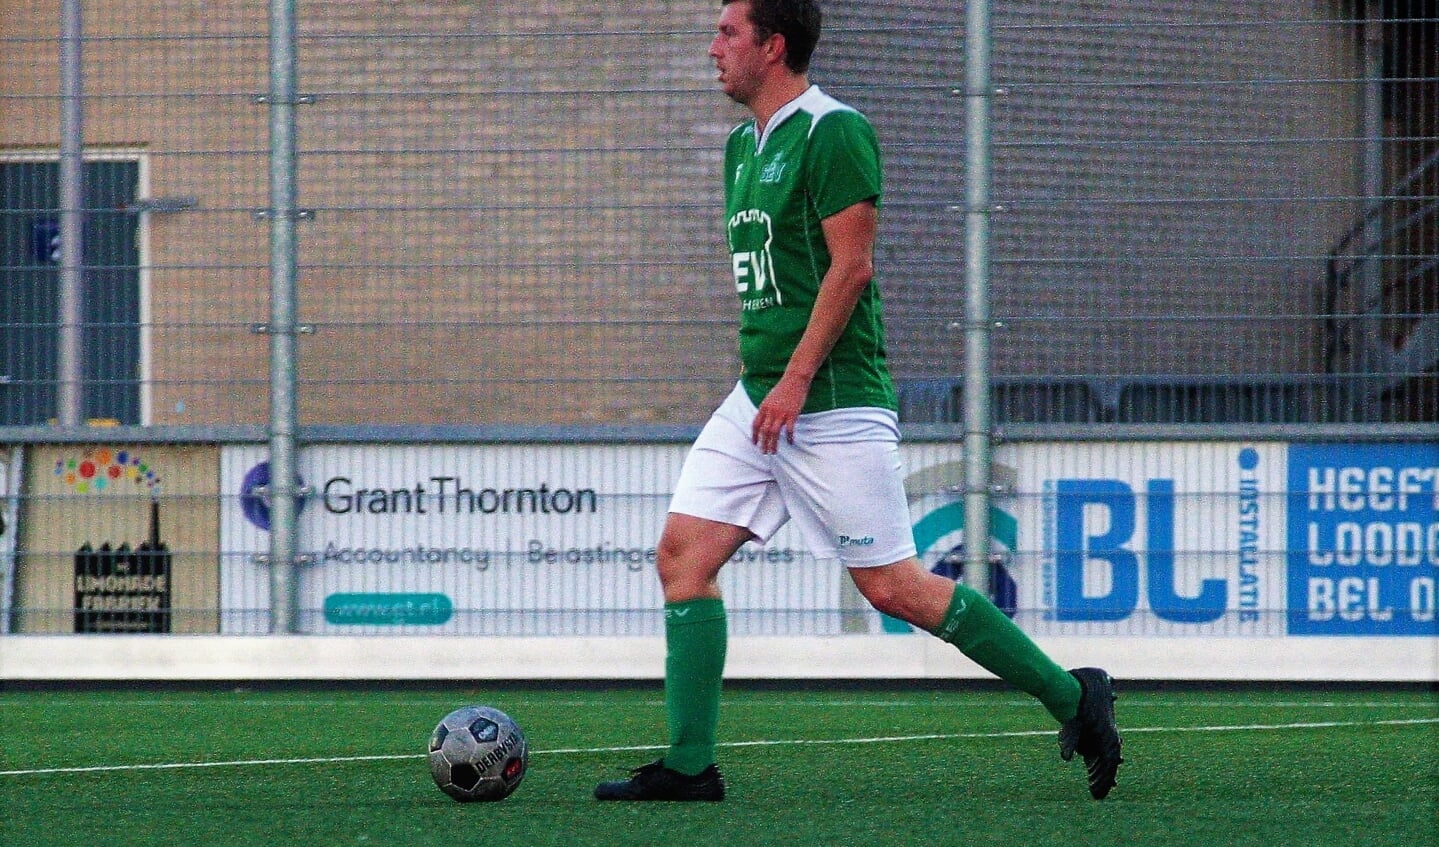 Routinier Paul Janssen (SEV), die ook bij Forum Sport, RKAVV & Wilhelmus voetbalde, scoorde 2-2 (archieffoto: AW)